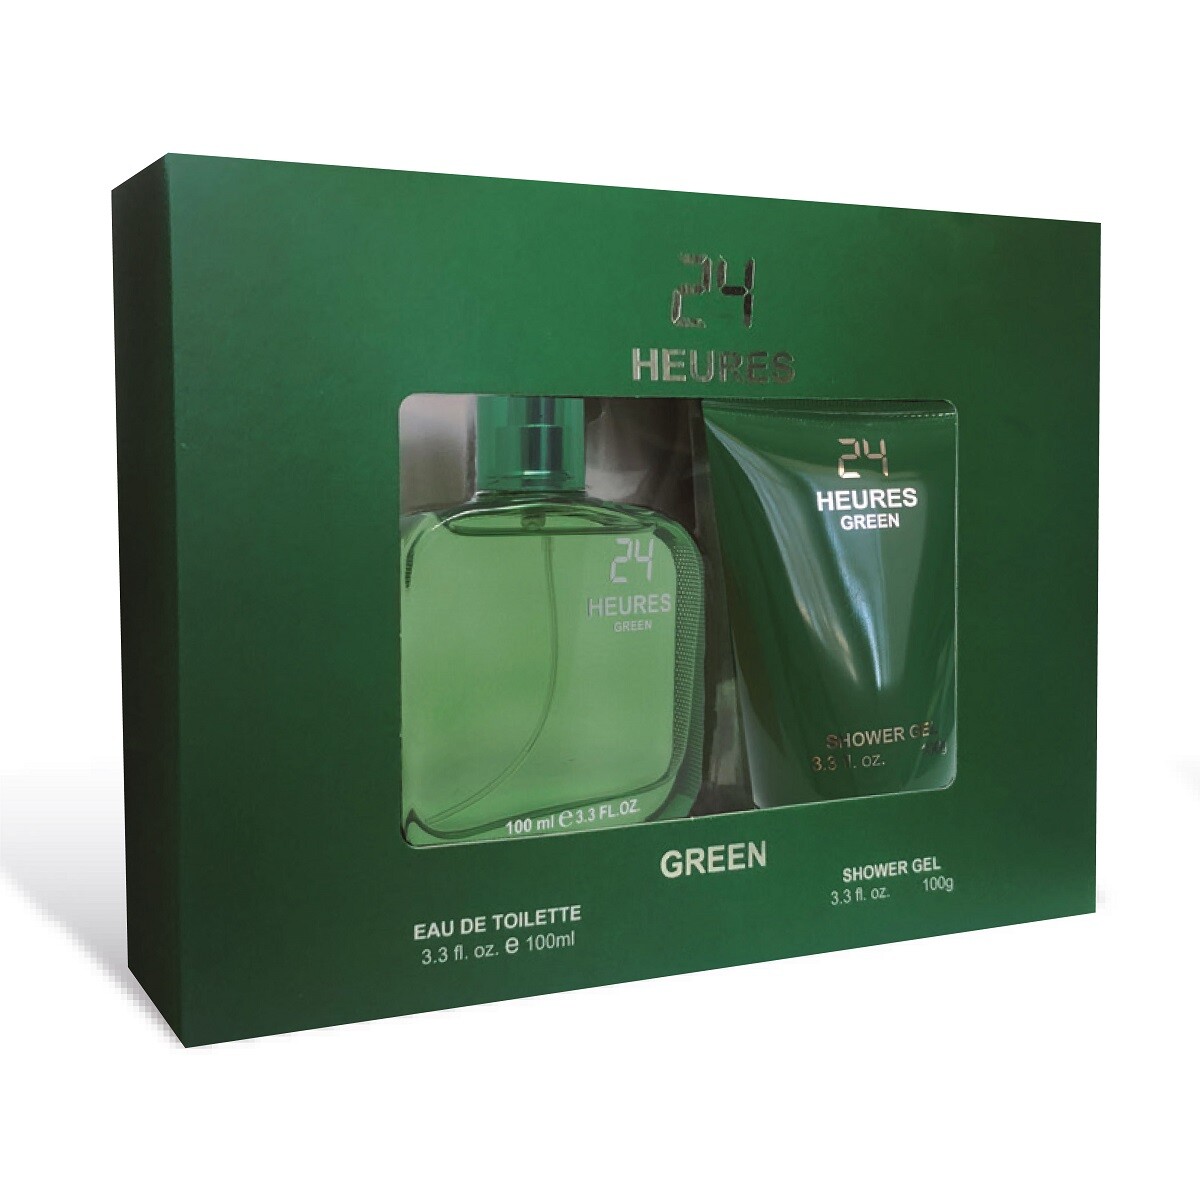 Perfume Casapueblo 24 Heures Green Edt 100ml+gel Ducha 100ml 